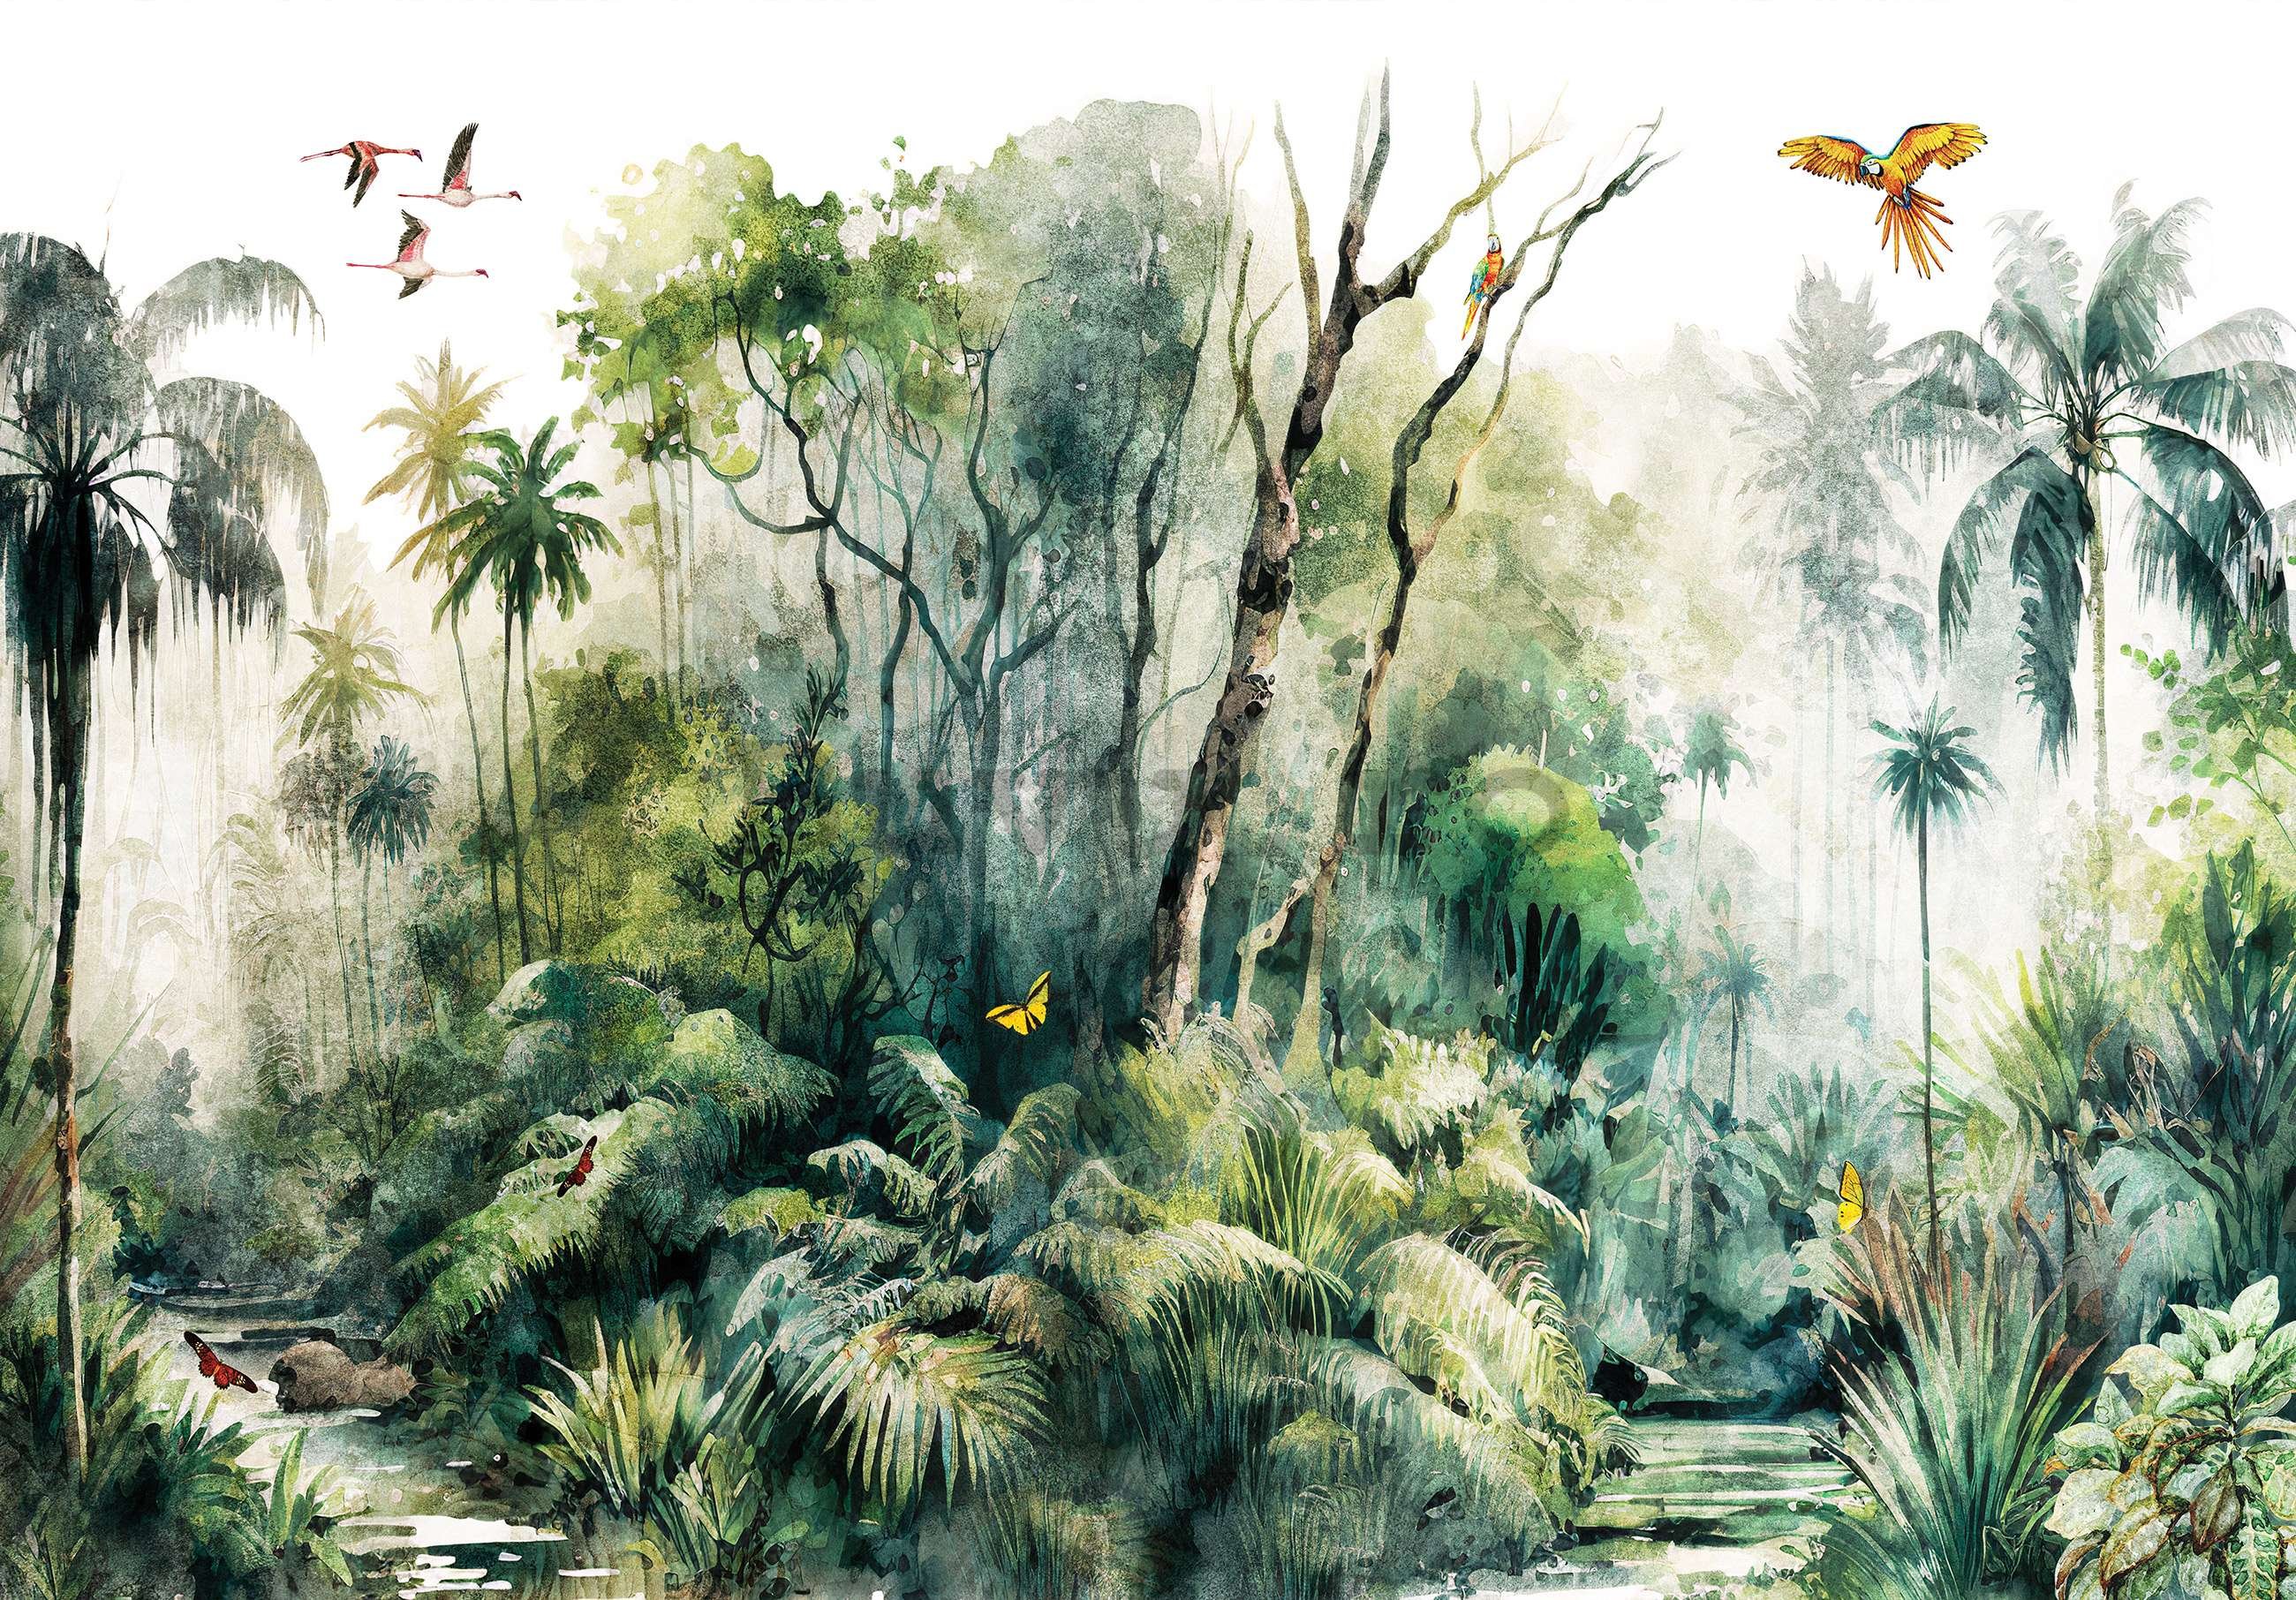 Fototapet vlies: În pădurea tropicală (pictat) - 368x254 cm